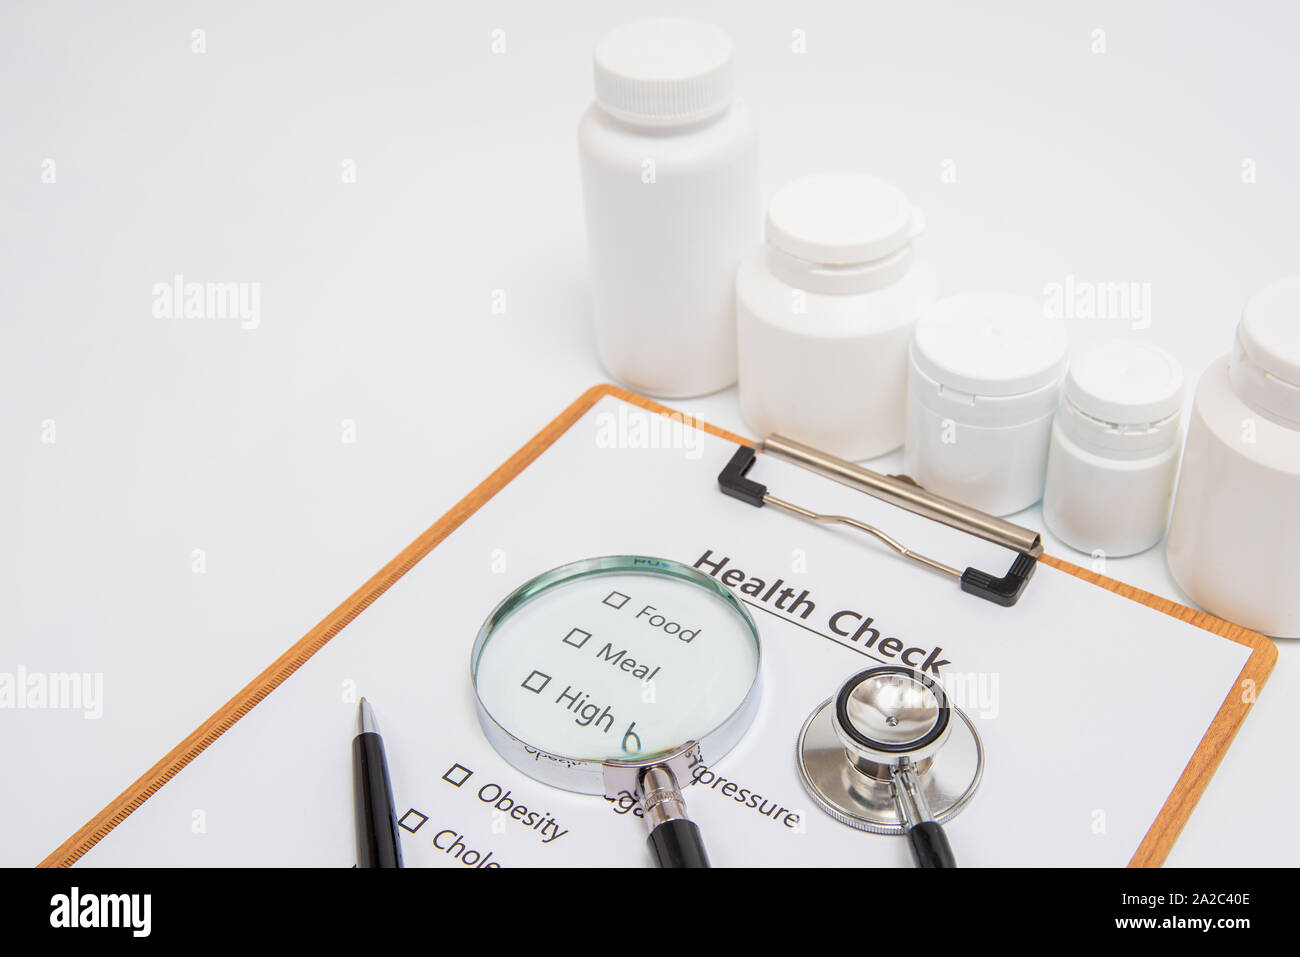 Gesundheit Konzept mit Zwischenablage und Health Check ähnliche Produkte. Stockfoto